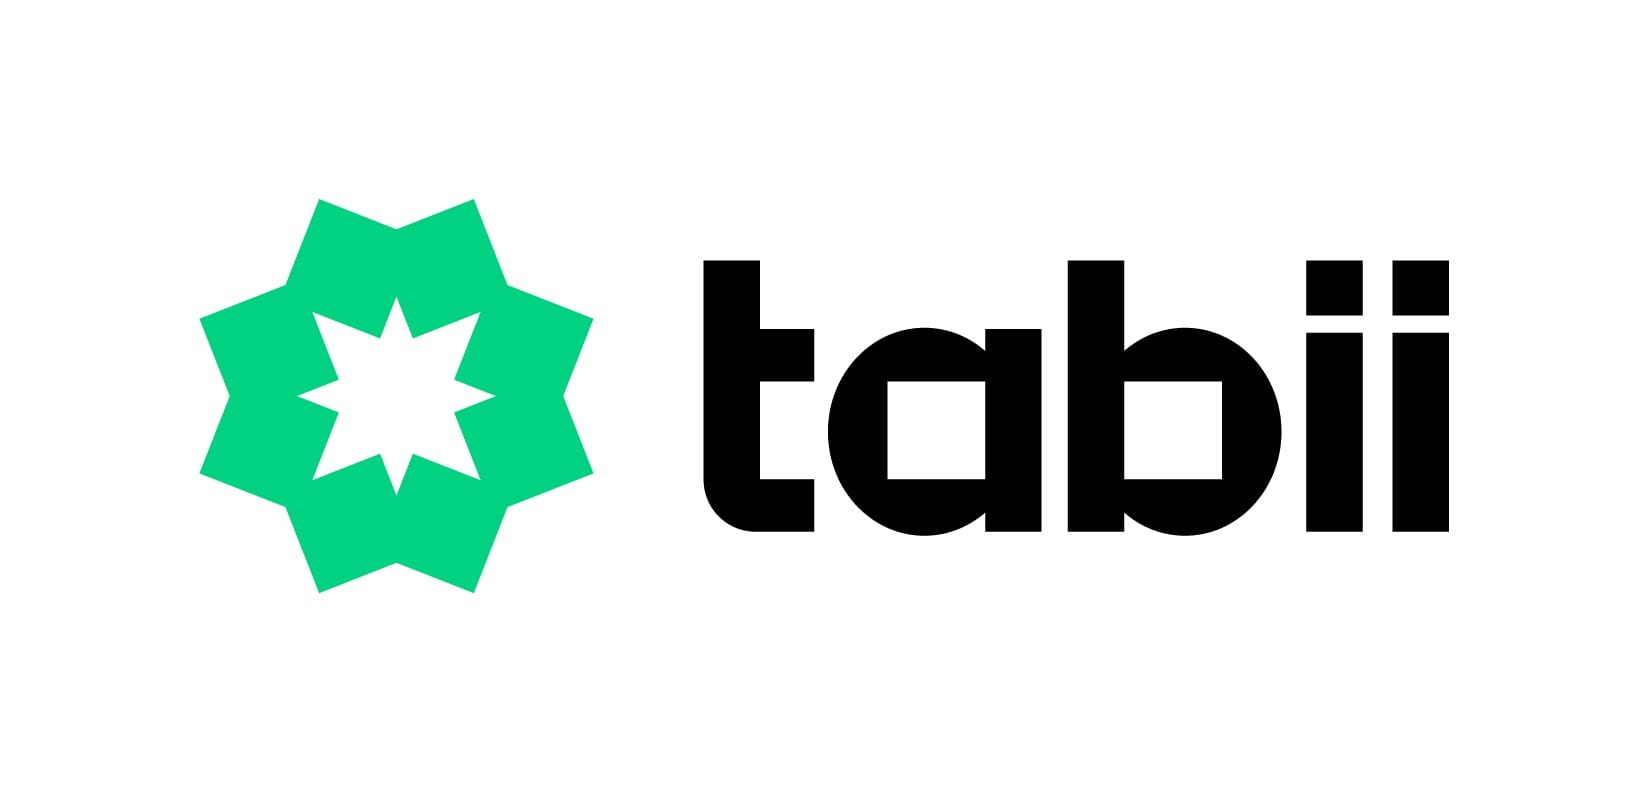 TRT tabii isimli dijital platformunu tanıttı